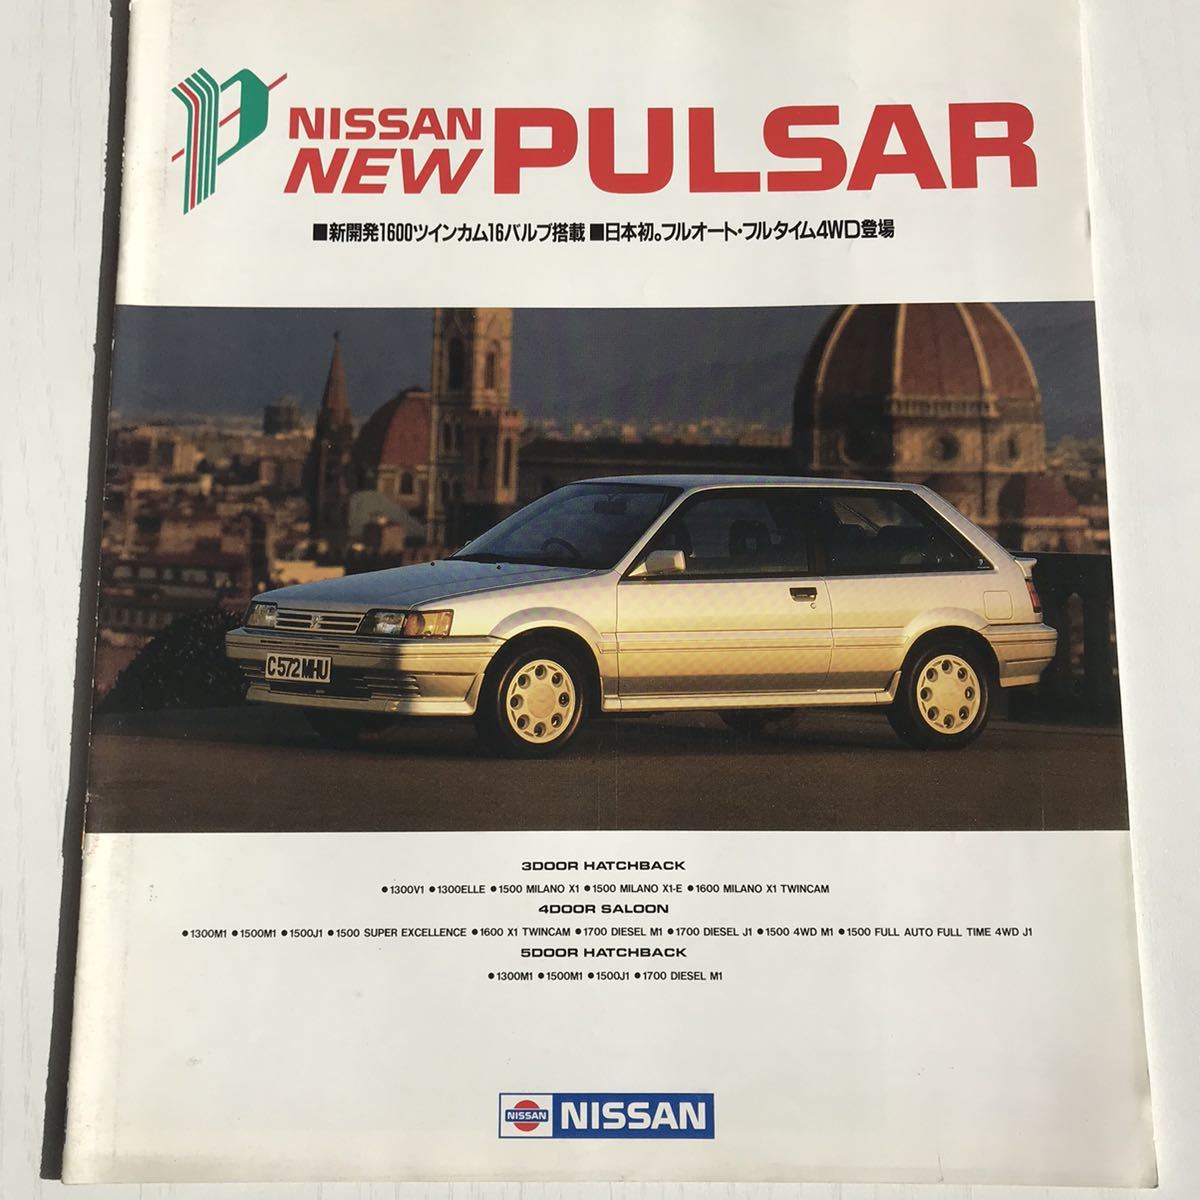 ★カタログ 日産 パルサー Nissan Pulsar 価格表付 N13 1986年5月 全15頁_画像1